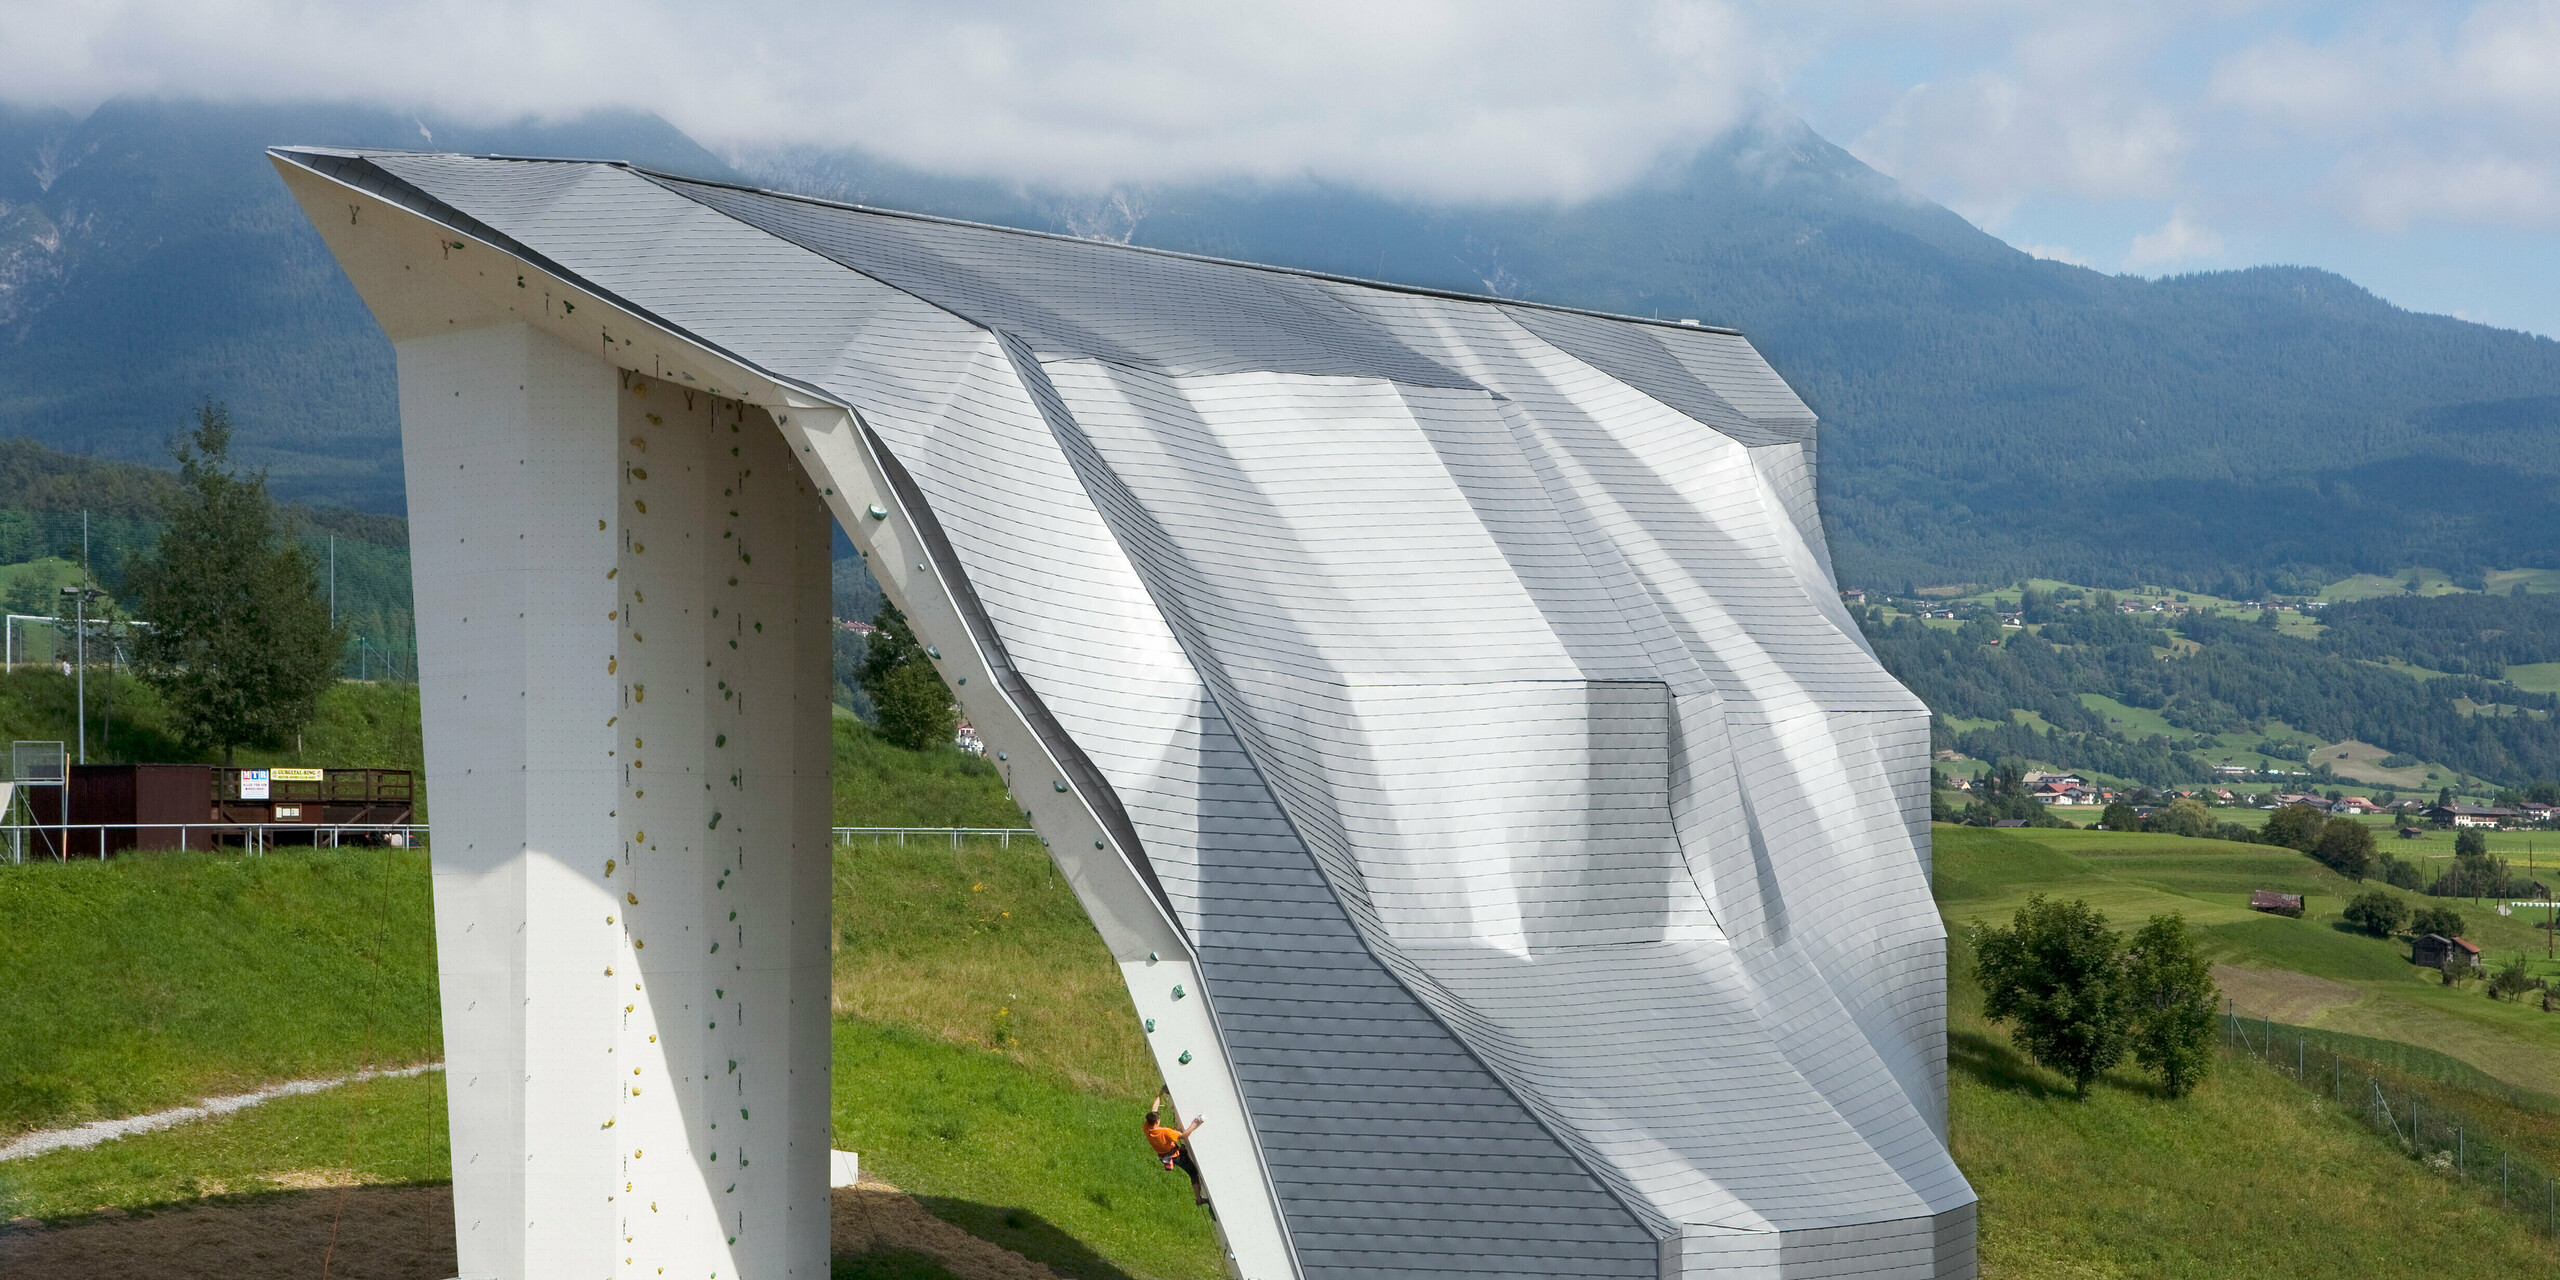 Vogelperspektive auf den Kletterturm Imst mit Aluminiumdach bzw. -fassade aus PREFA Dachschindeln in Silbermetallic und Bergpanorama im Hintergrund